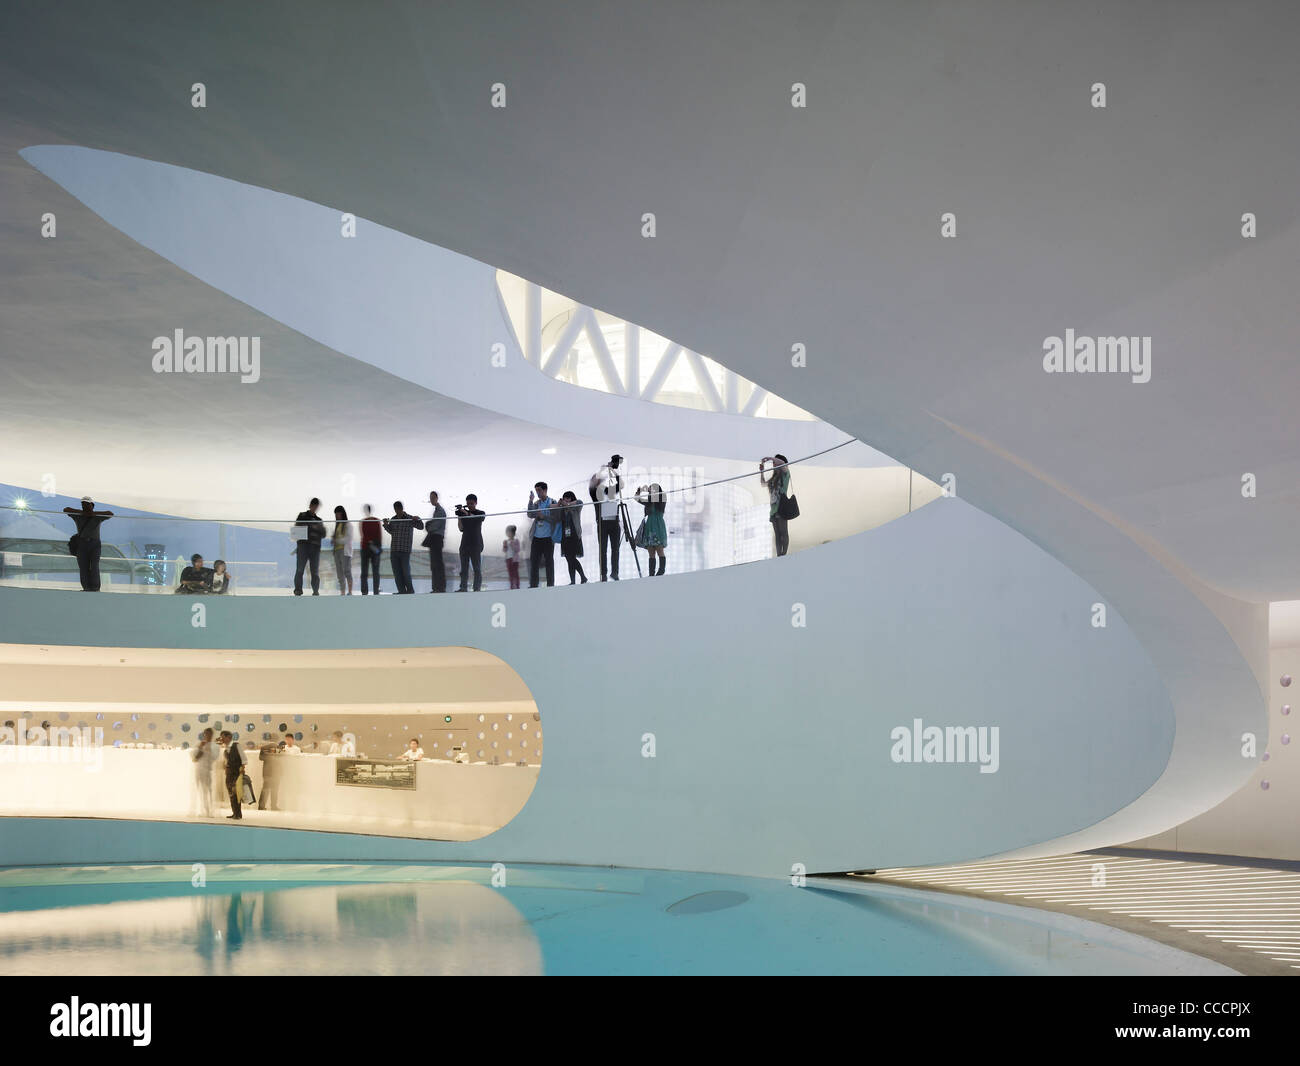 Le pavillon national danois mettra en valeur la durabilité sur le climat et l'énergie ainsi que des solutions d'Architecture et Design. Banque D'Images